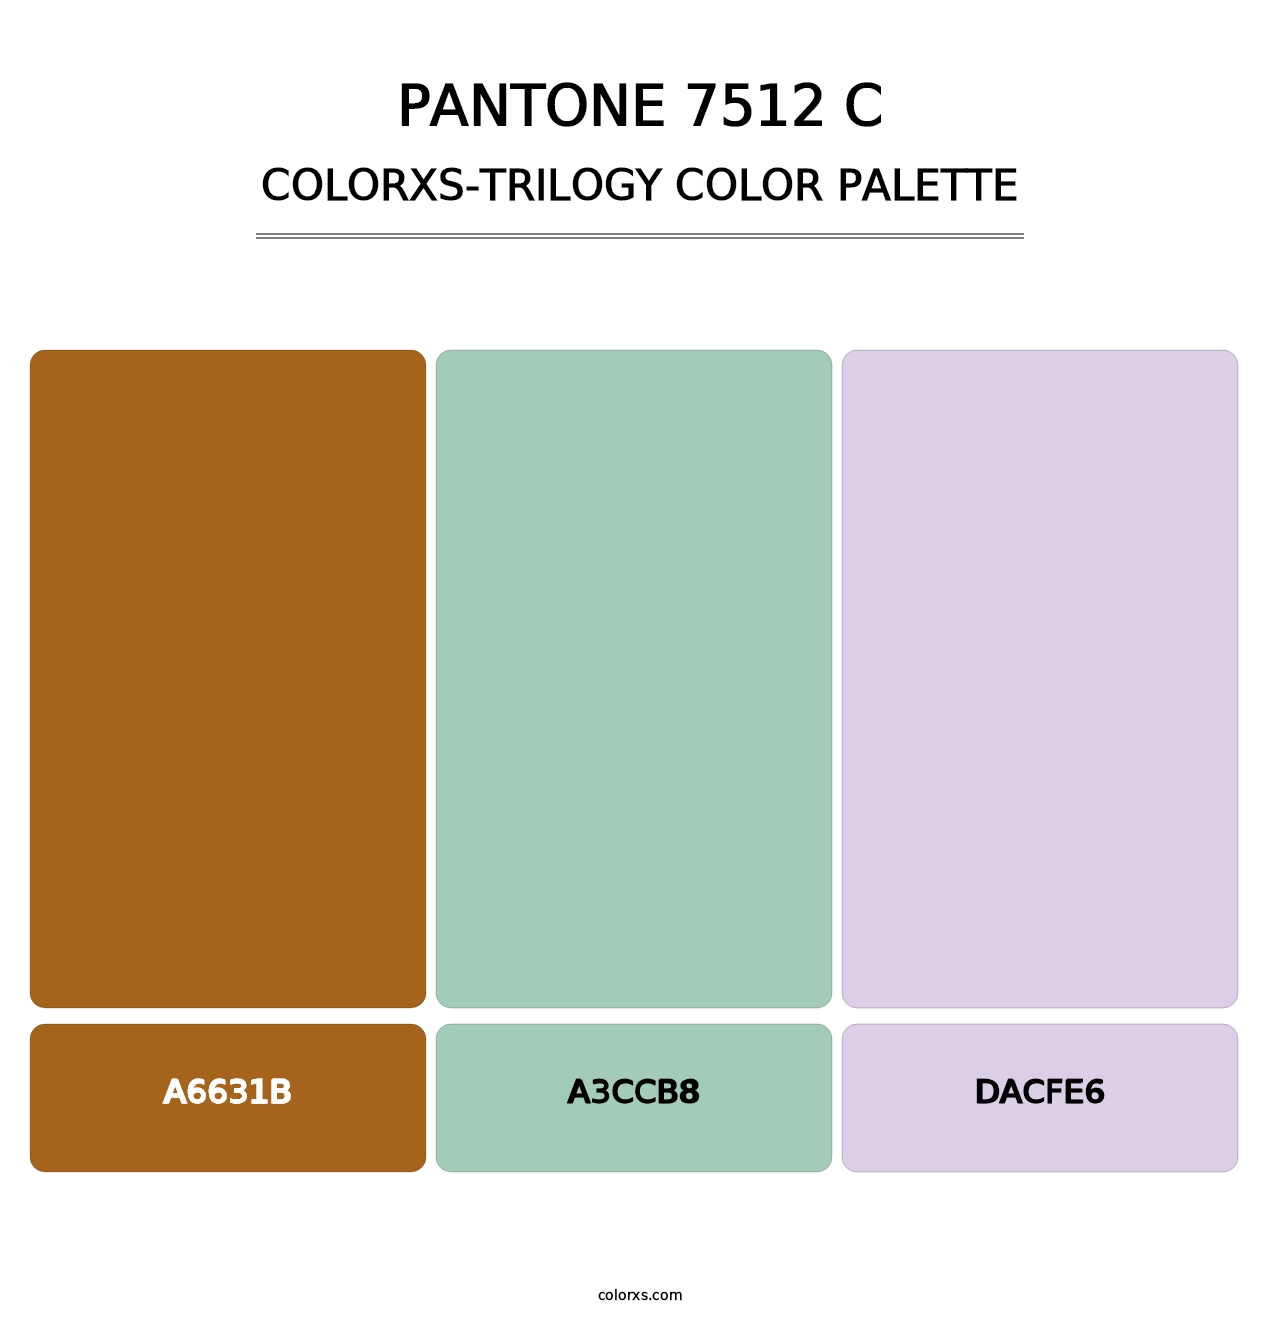 PANTONE 7512 C - Colorxs Trilogy Palette